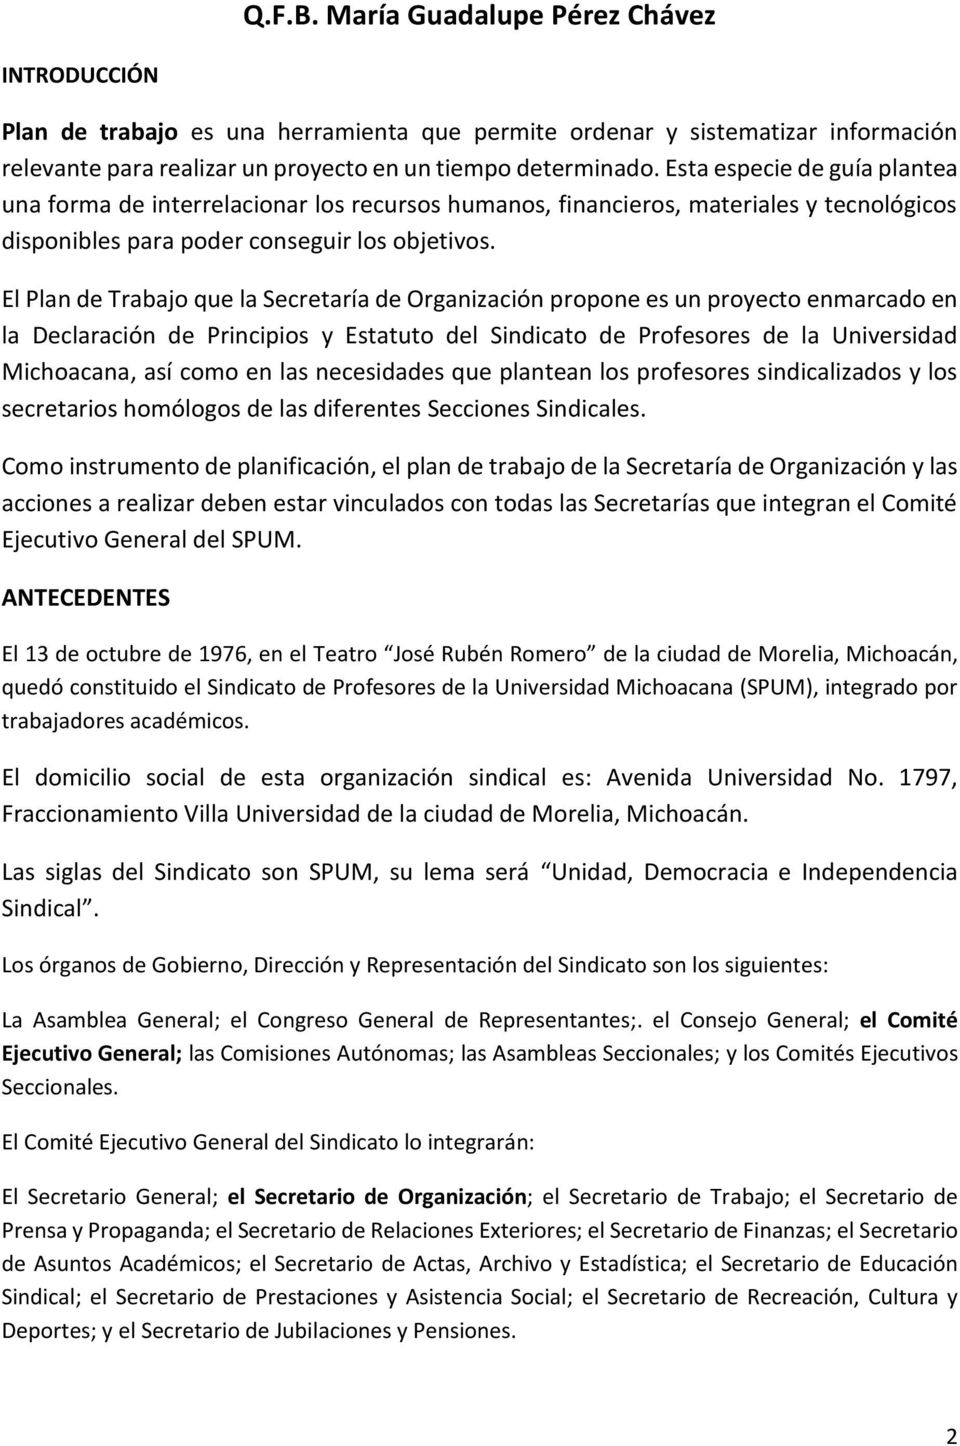 El Plan de Trabajo que la Secretaría de Organización propone es un proyecto enmarcado en la Declaración de Principios y Estatuto del Sindicato de Profesores de la Universidad Michoacana, así como en